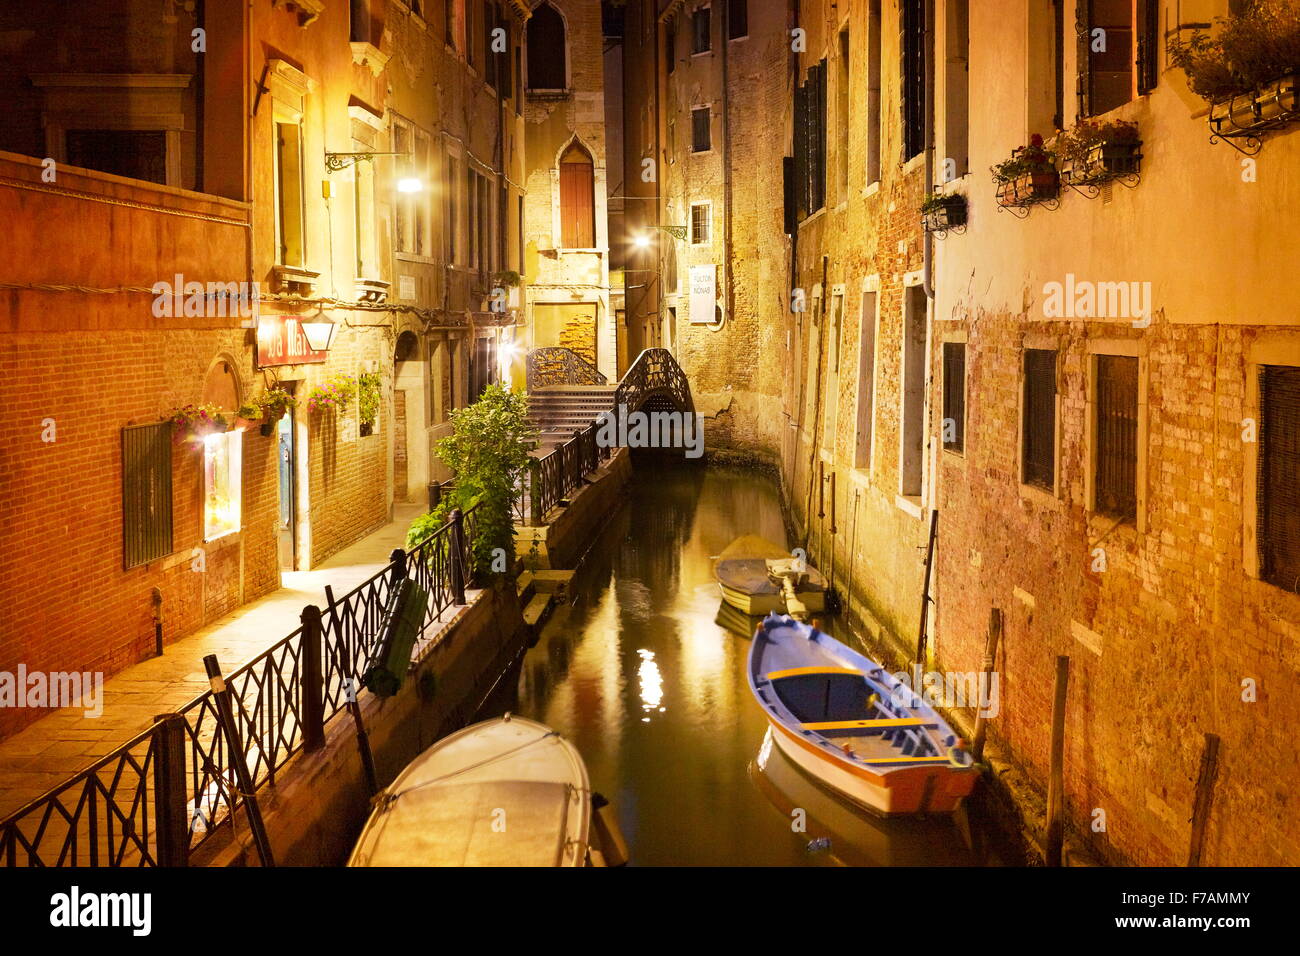 Venetian canal at night, Venice, Italy Stock Photo